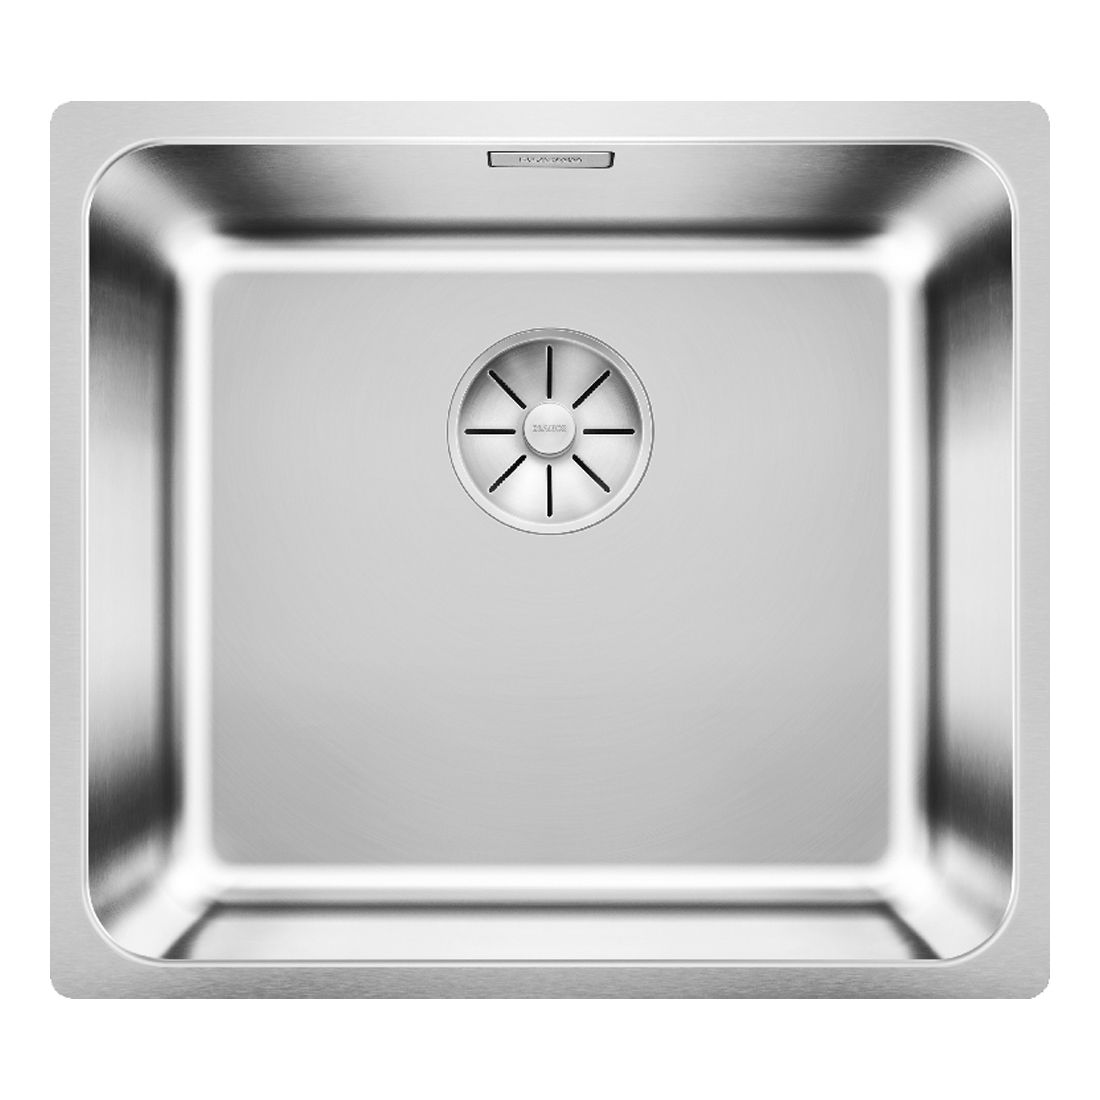 Кухонная мойка Blanco Solis 450-U полированная сталь кухонная мойка blanco solis 500 u полированная сталь